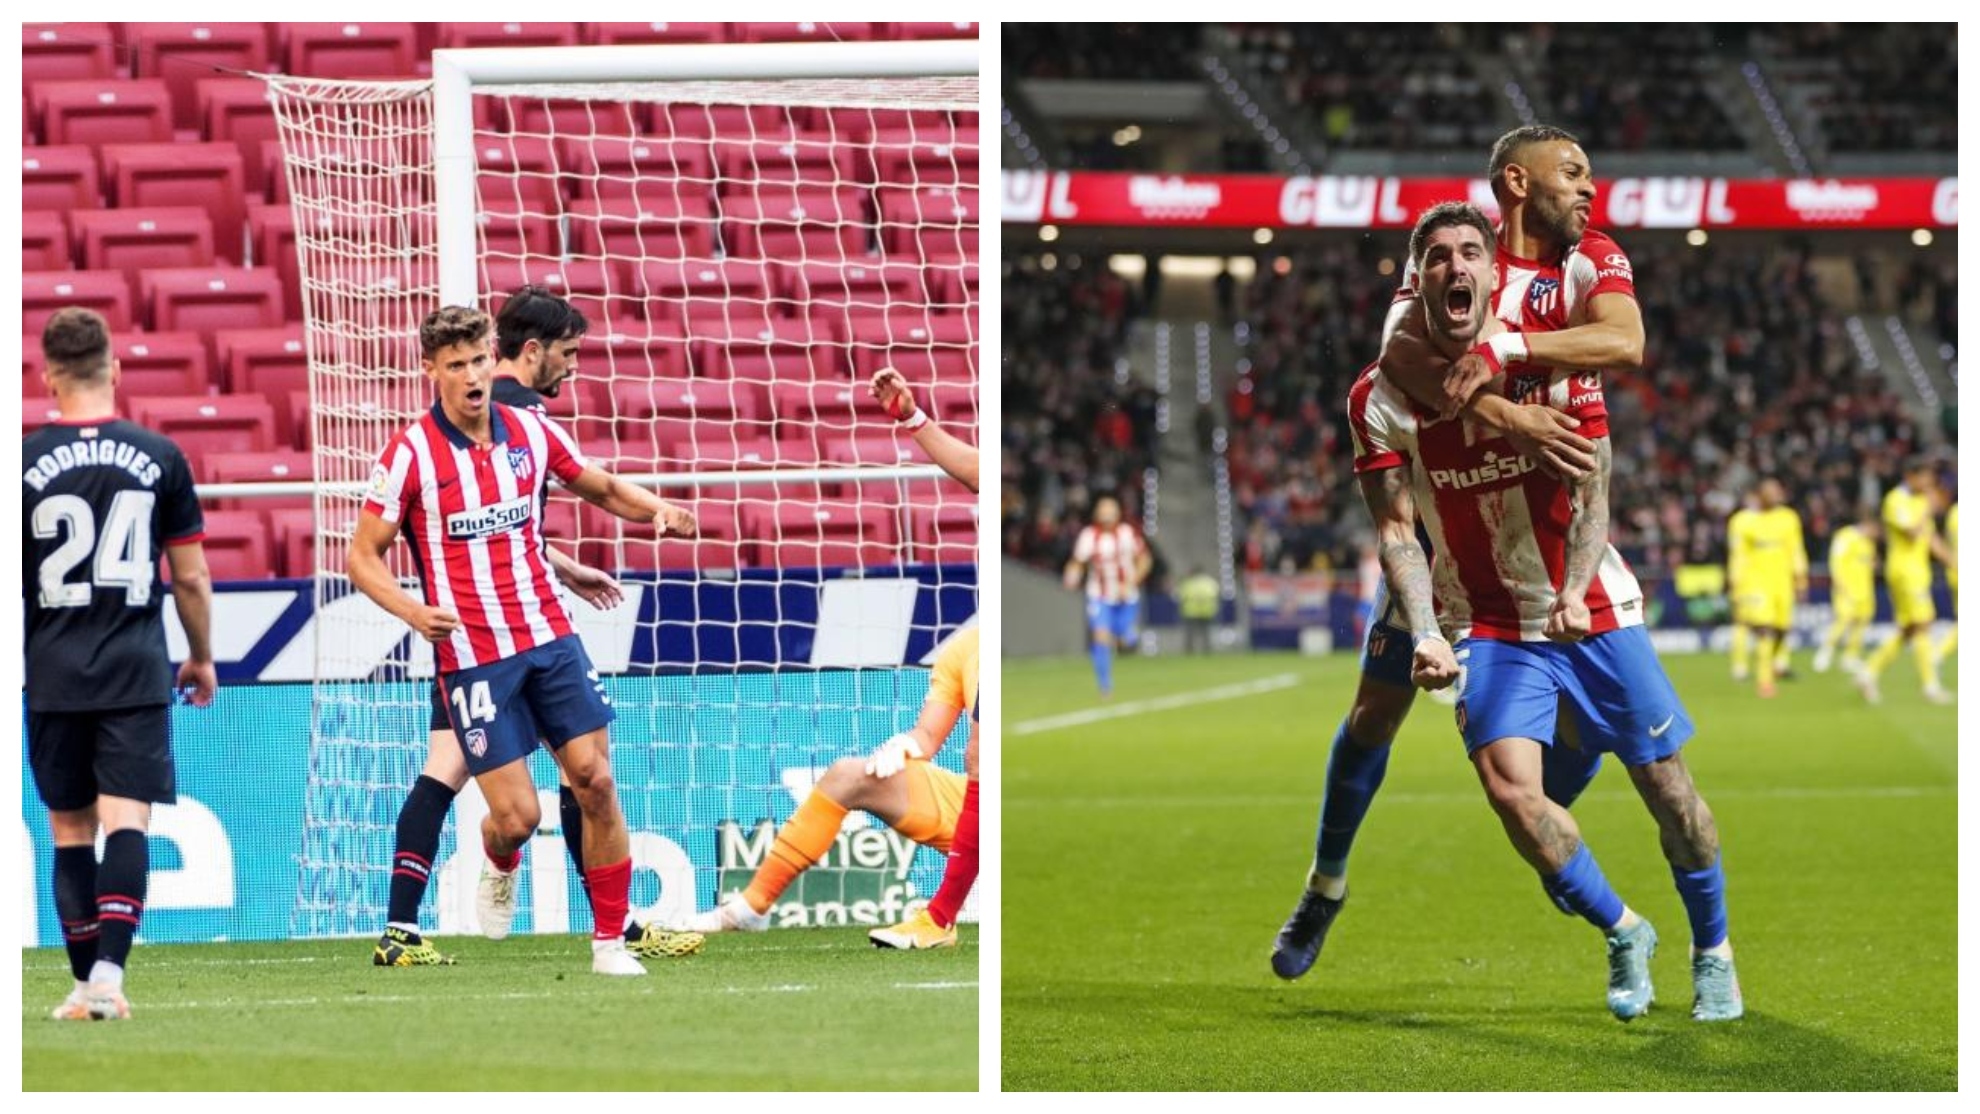 El gol que le falta al Atlético